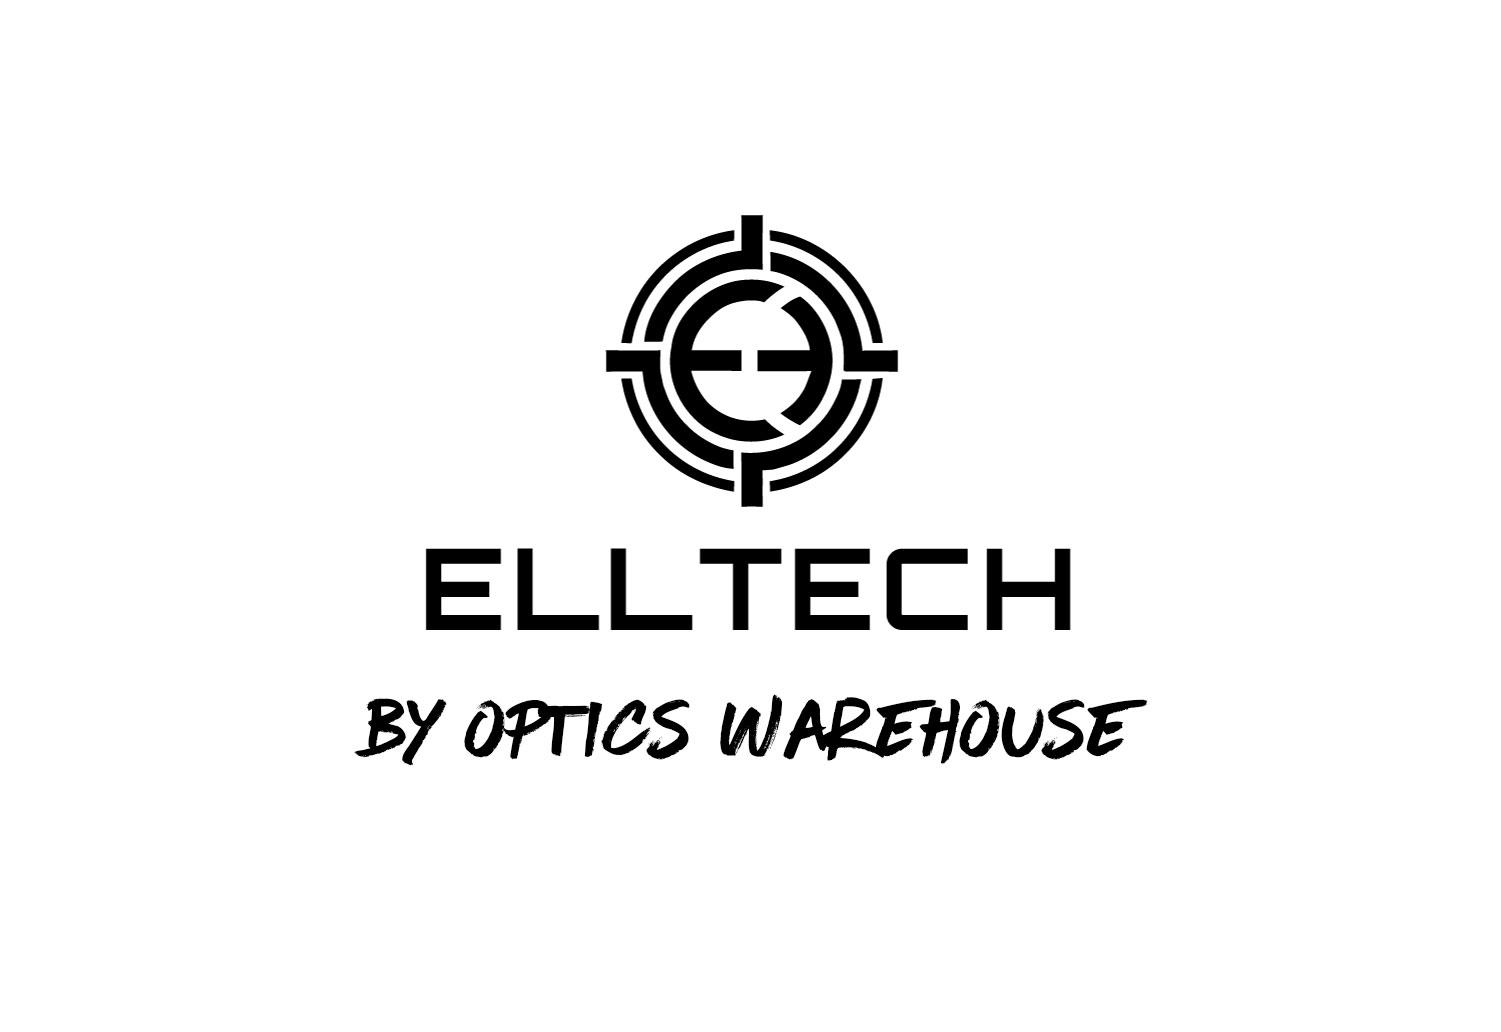 ELLTECH by Optics Warehouse